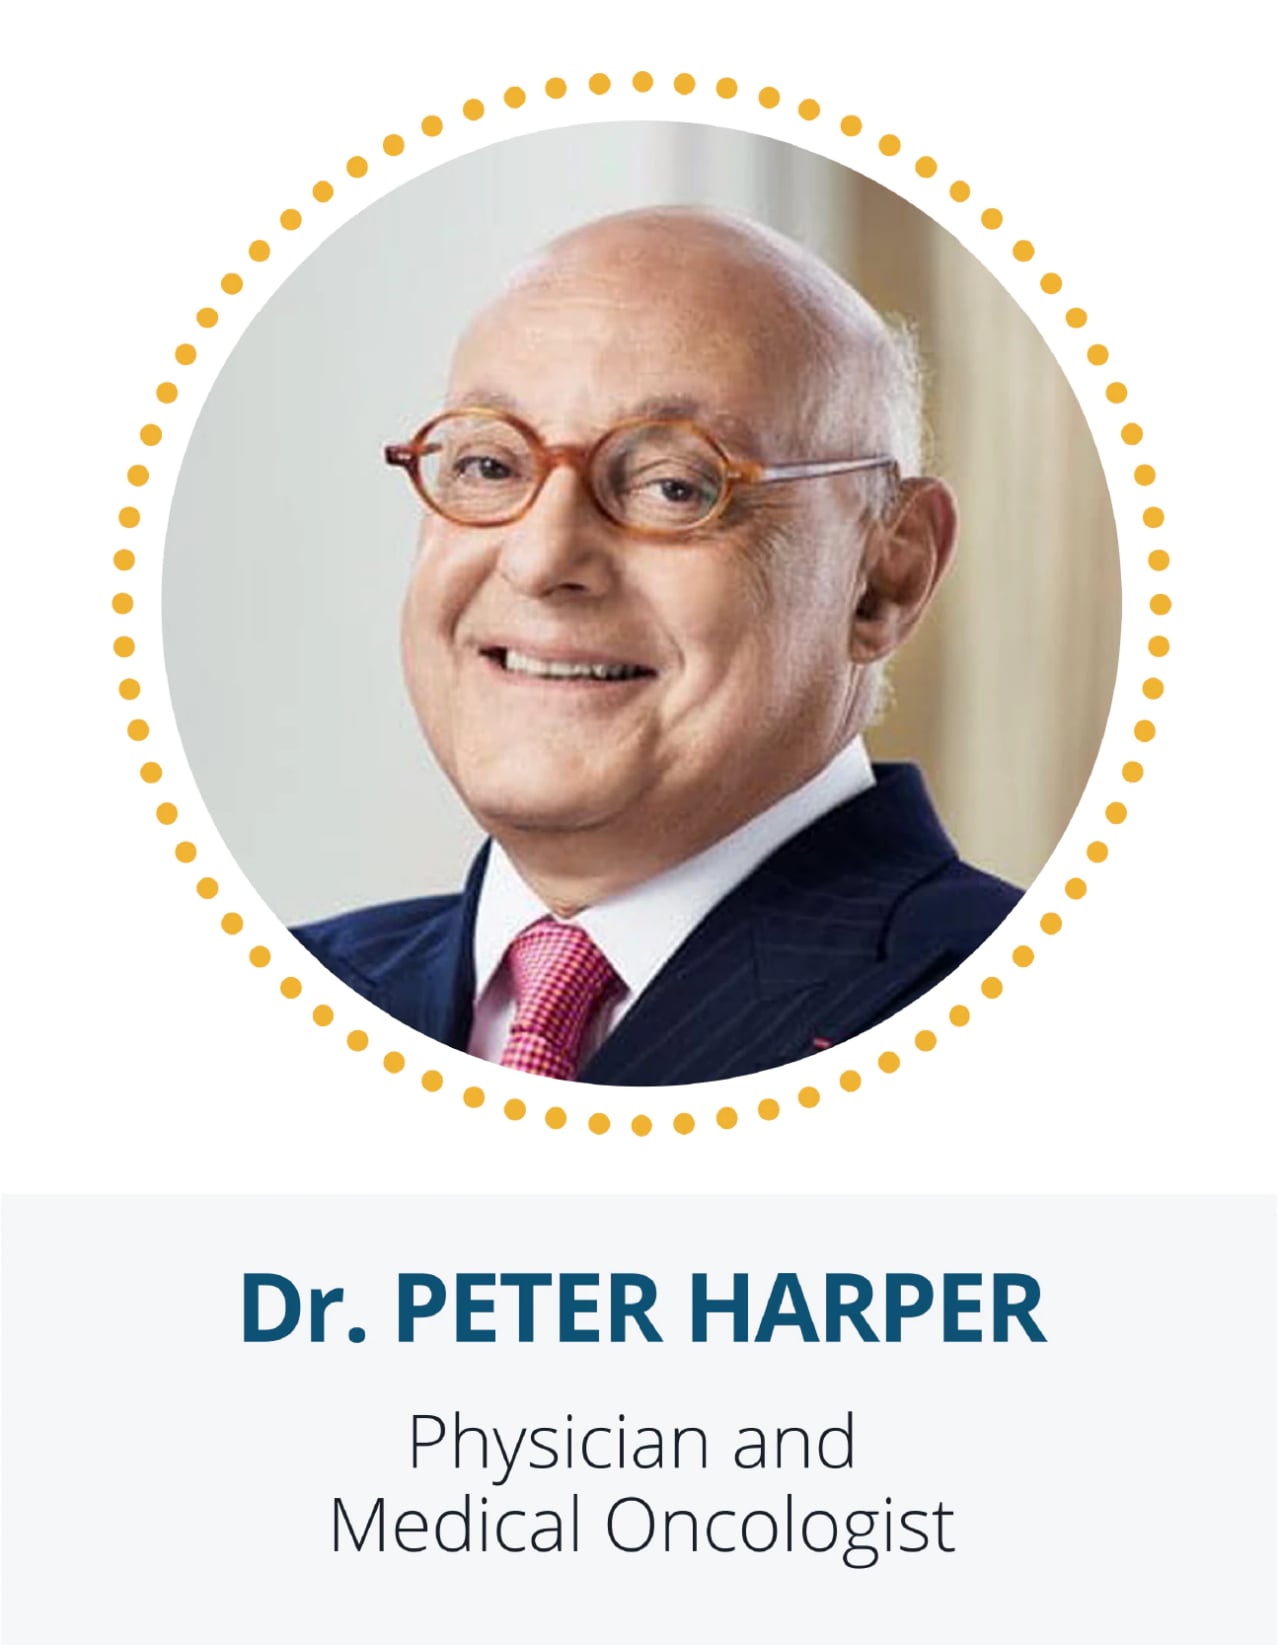 Dr. Peter Harper